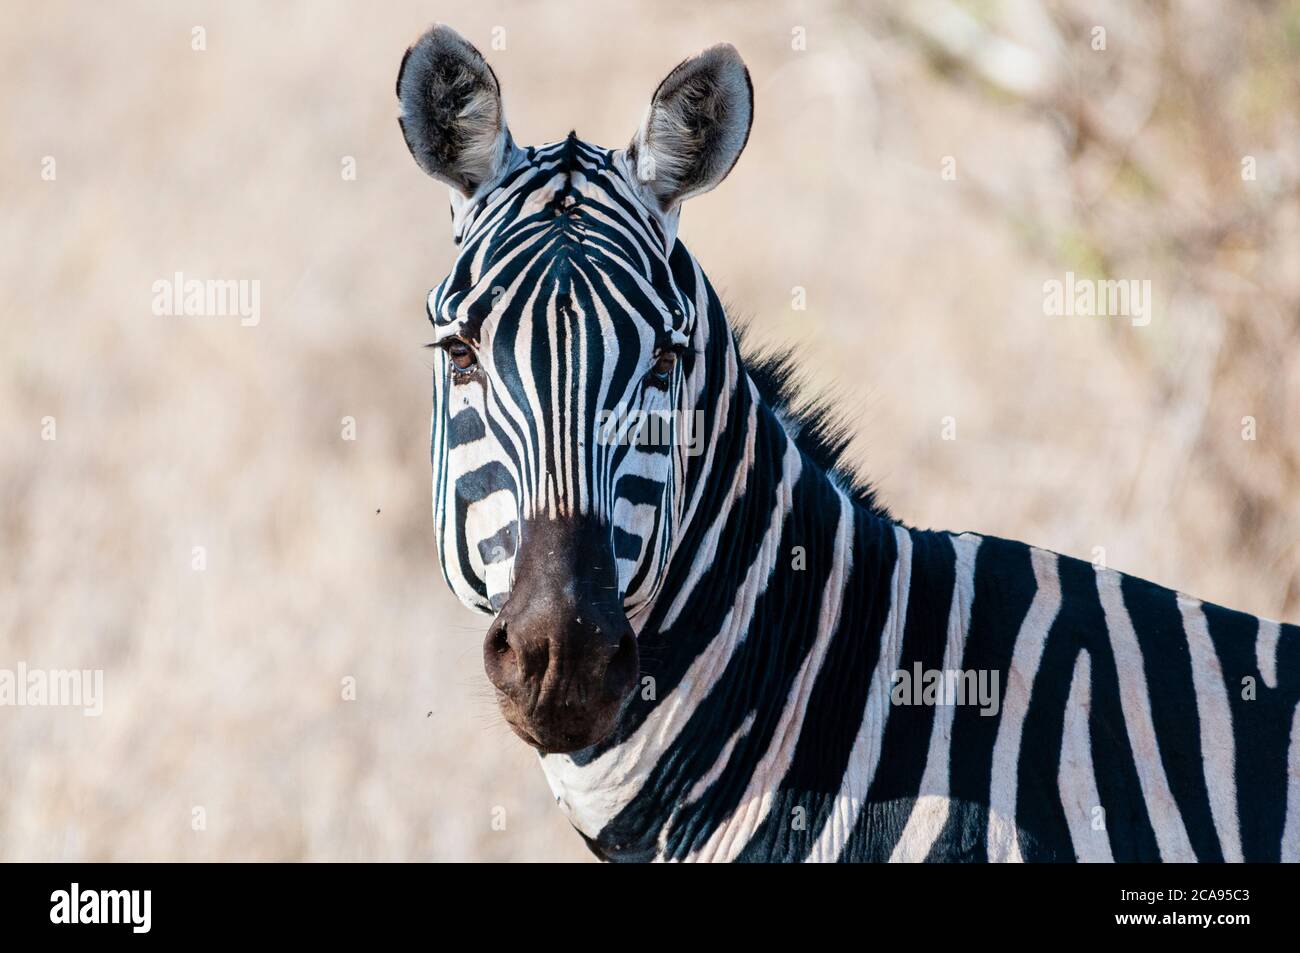 Plains zebra (Equus quagga), Taita Hills Wildlife Sanctuary, Kenya, East Africa, Africa Stock Photo